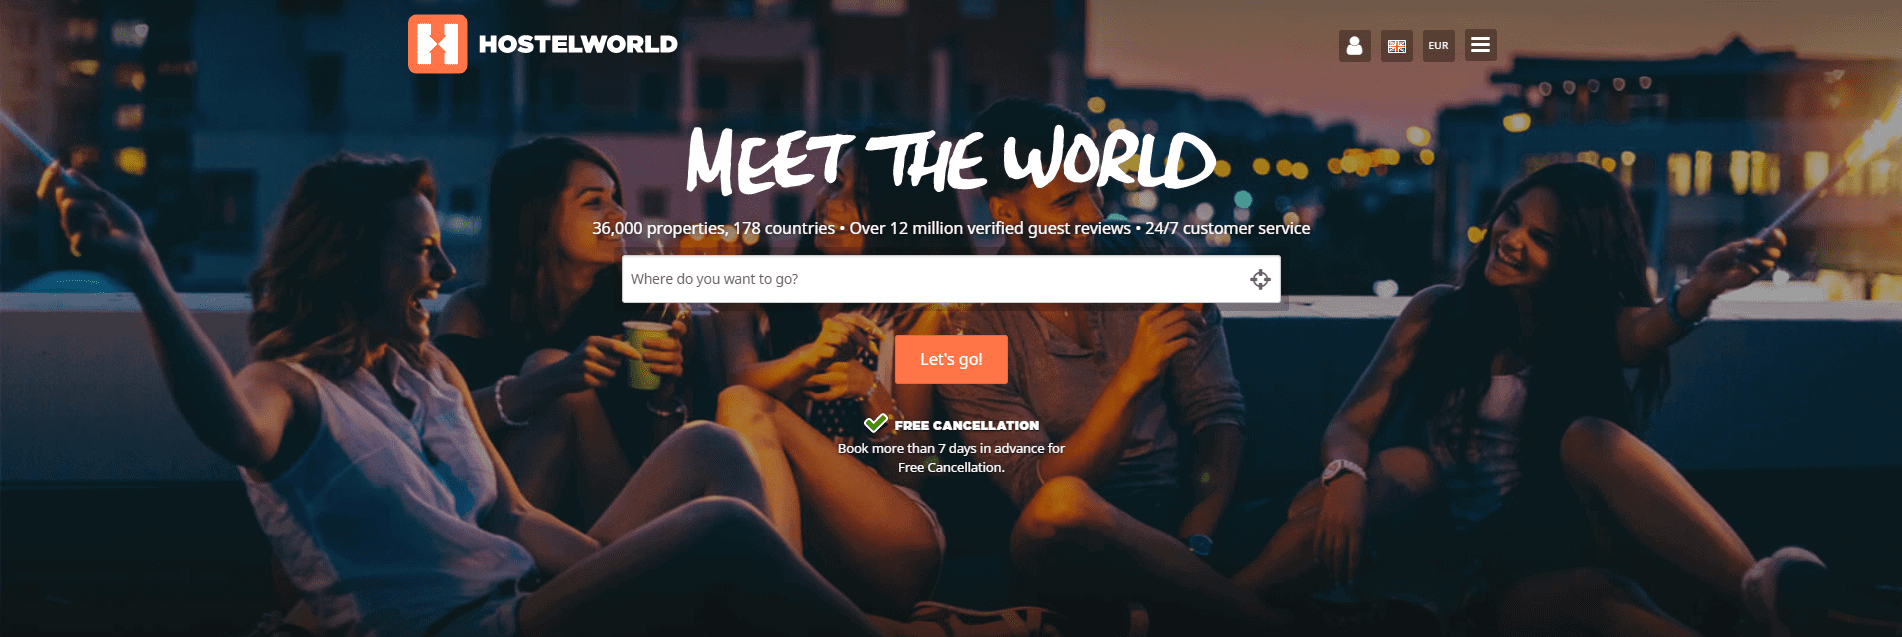 Hostel World rencontre le monde | talents Portugal